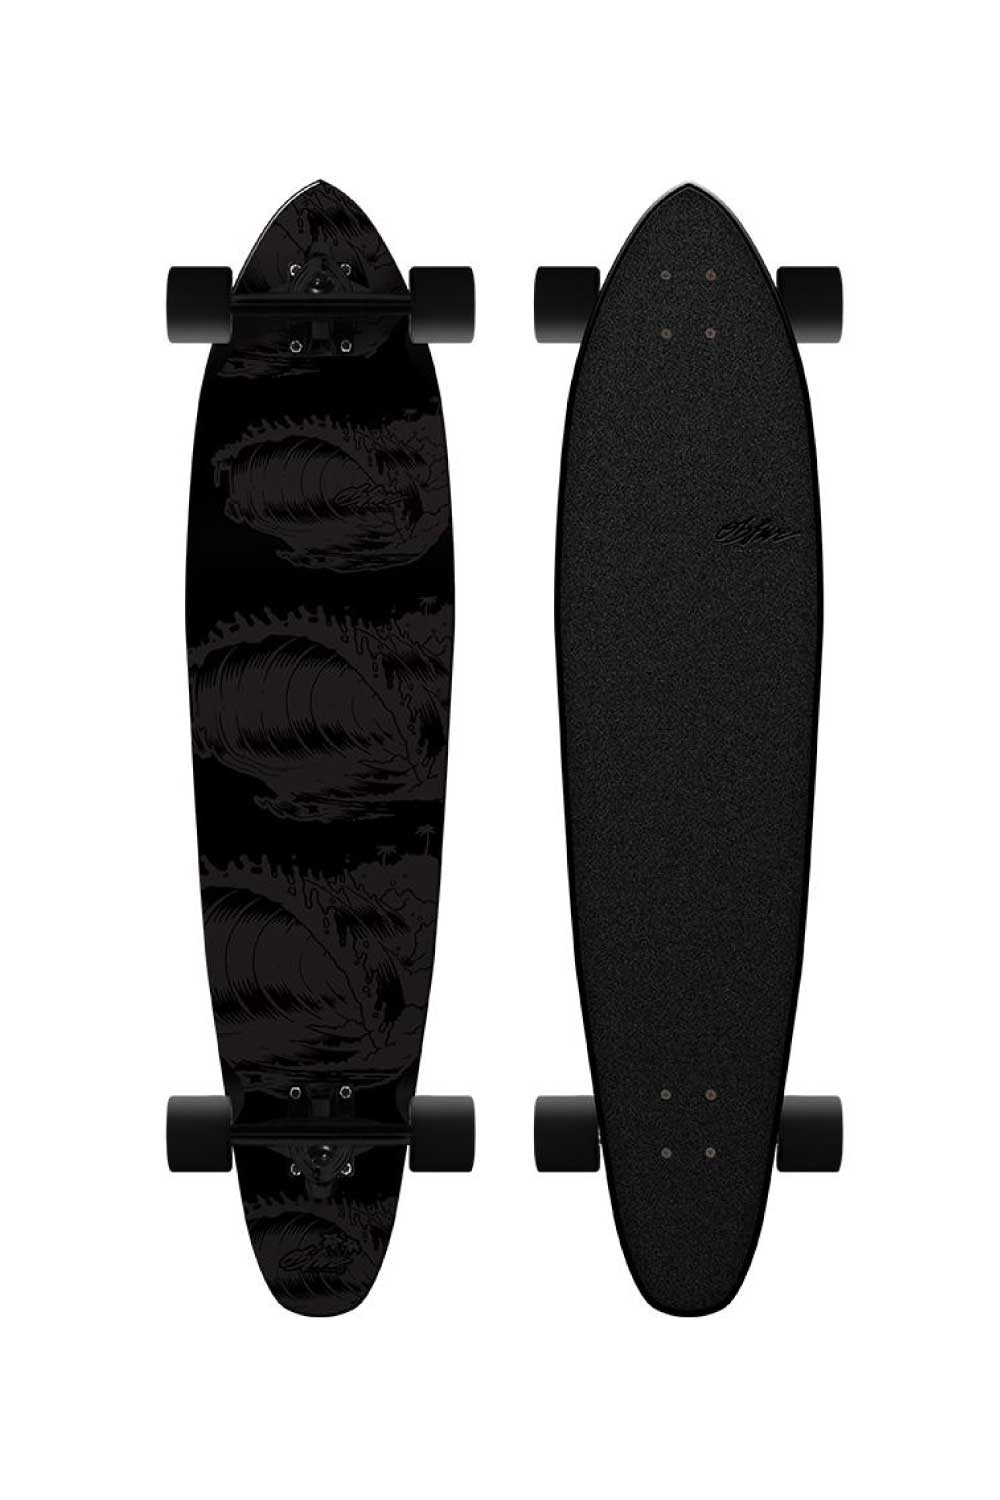 Obfive Blacker Longboard 38" Skateboard